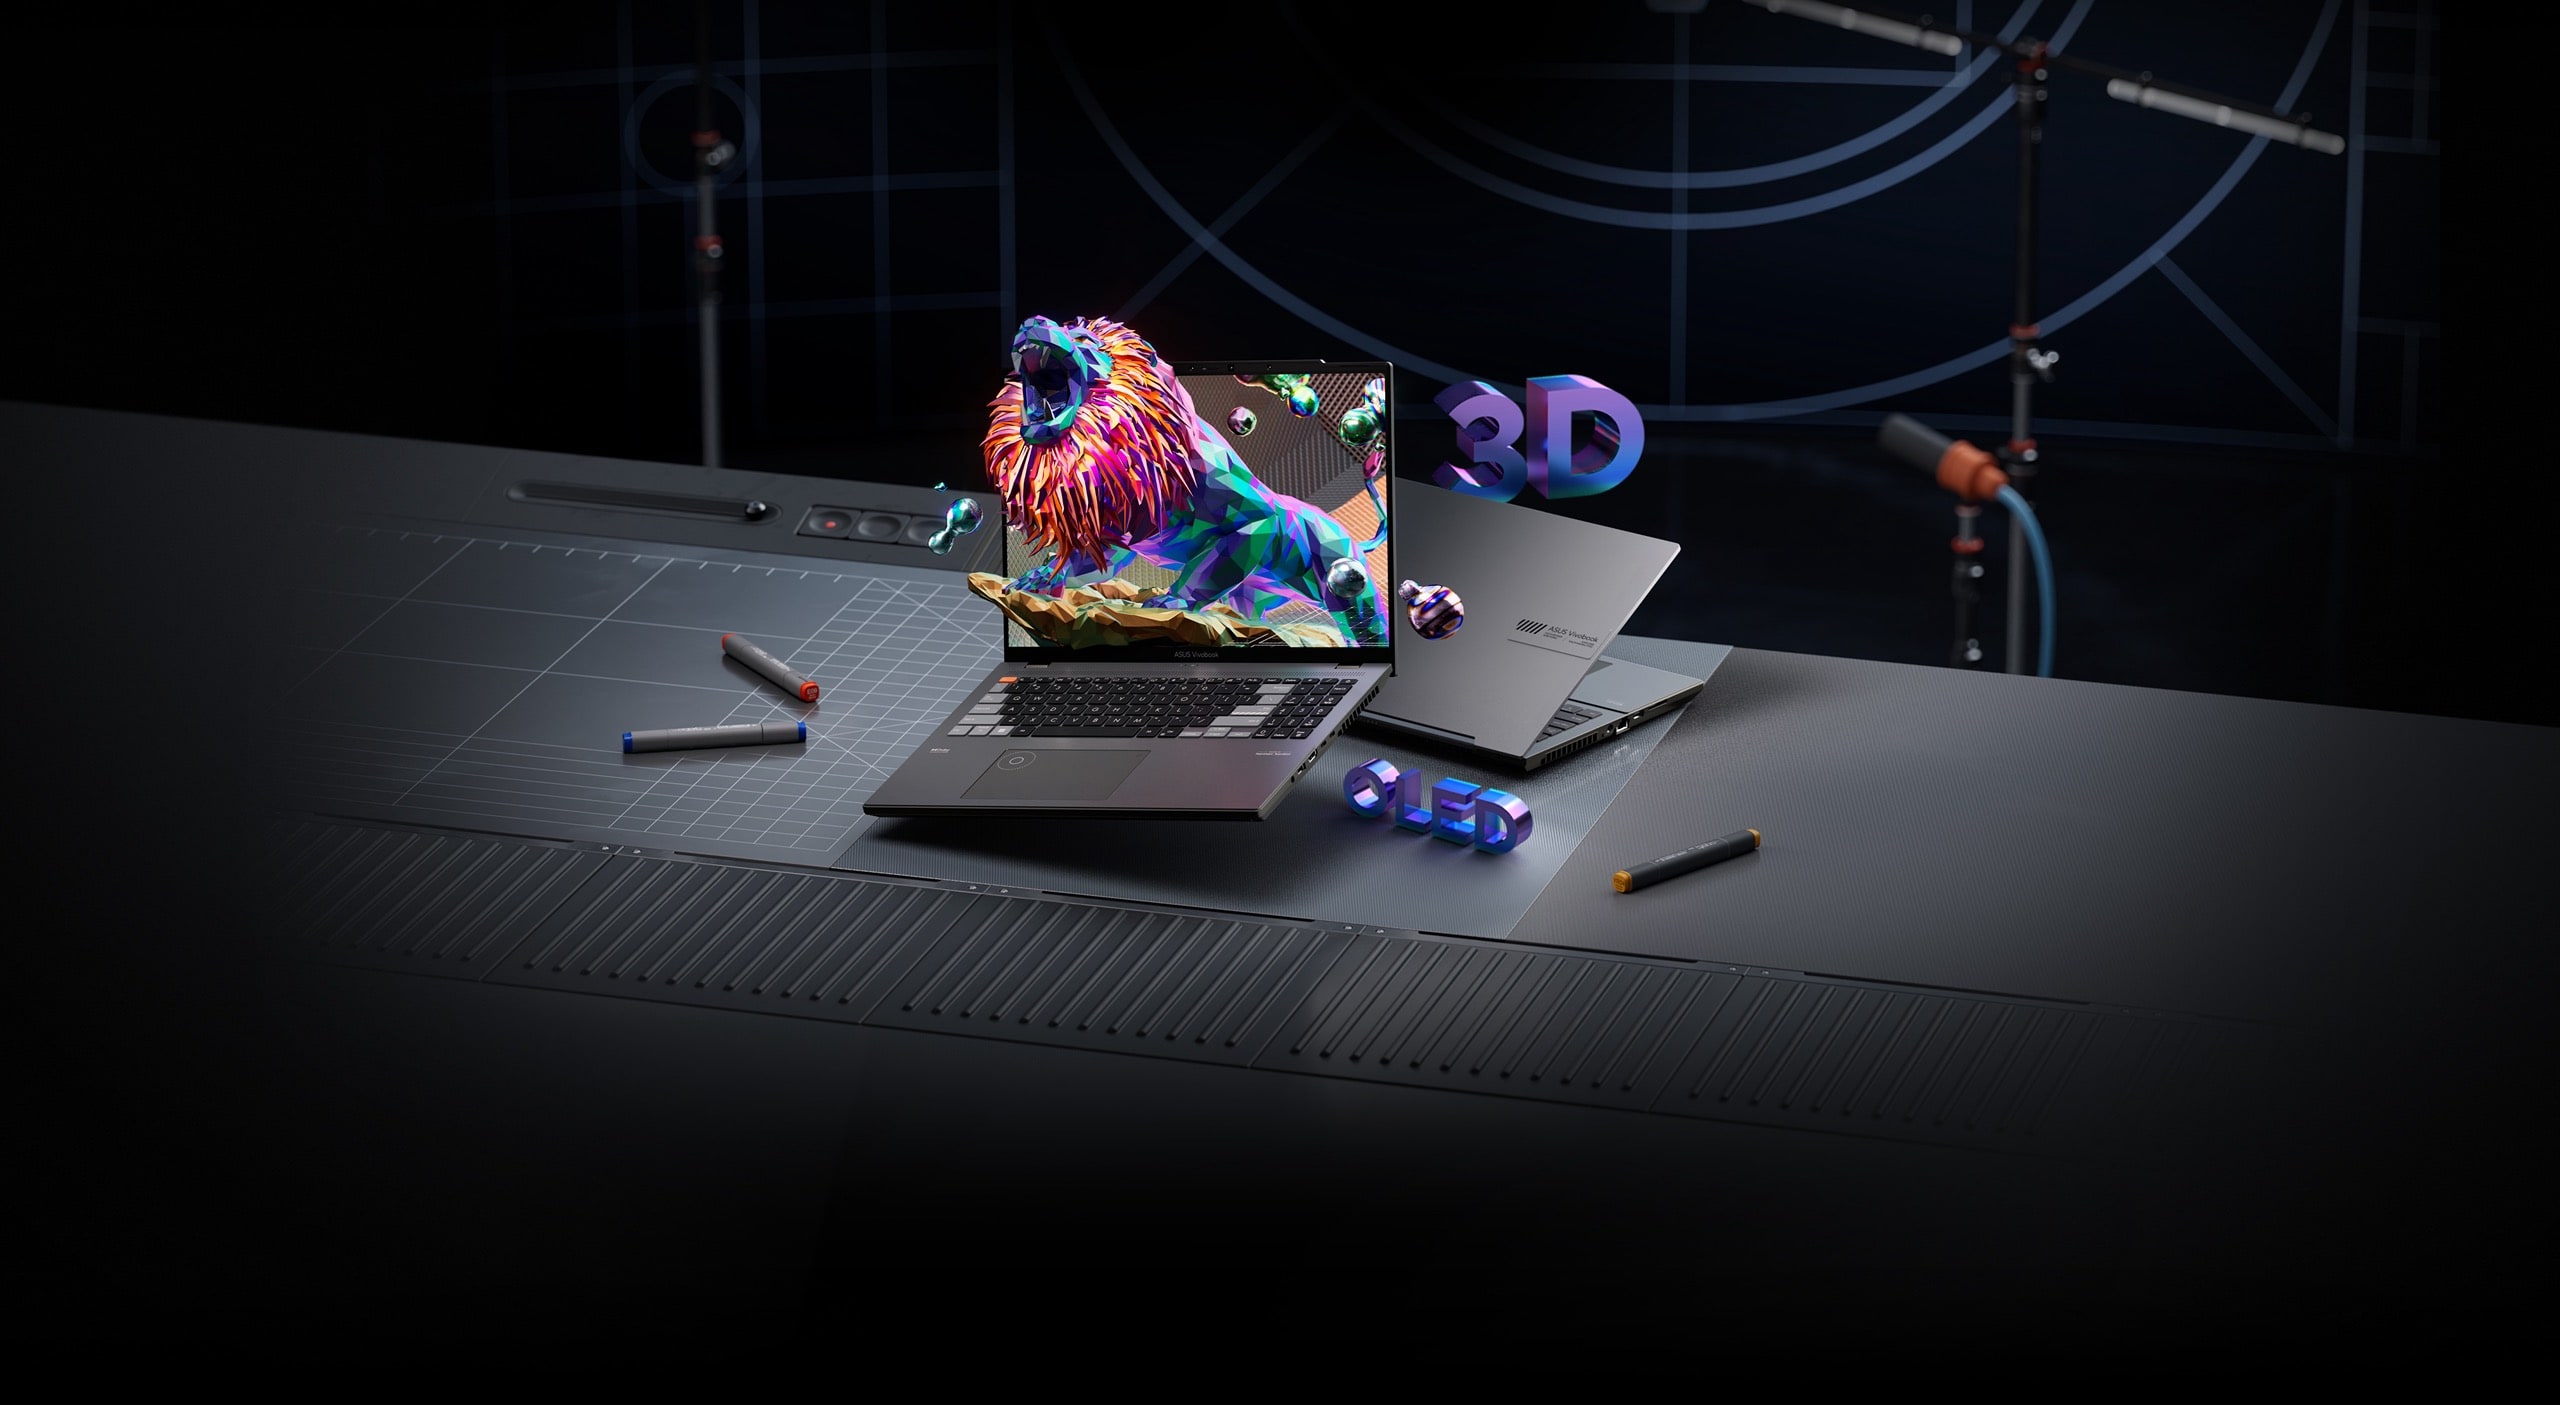 Wykończony w czarno-srebrnych odcieniach model Vivobook Pro 16X 3D OLED stojący na biurku w studiu nagraniowym, ponadto czarny laptop wyświetlający na ekranie ryczącego lwa.